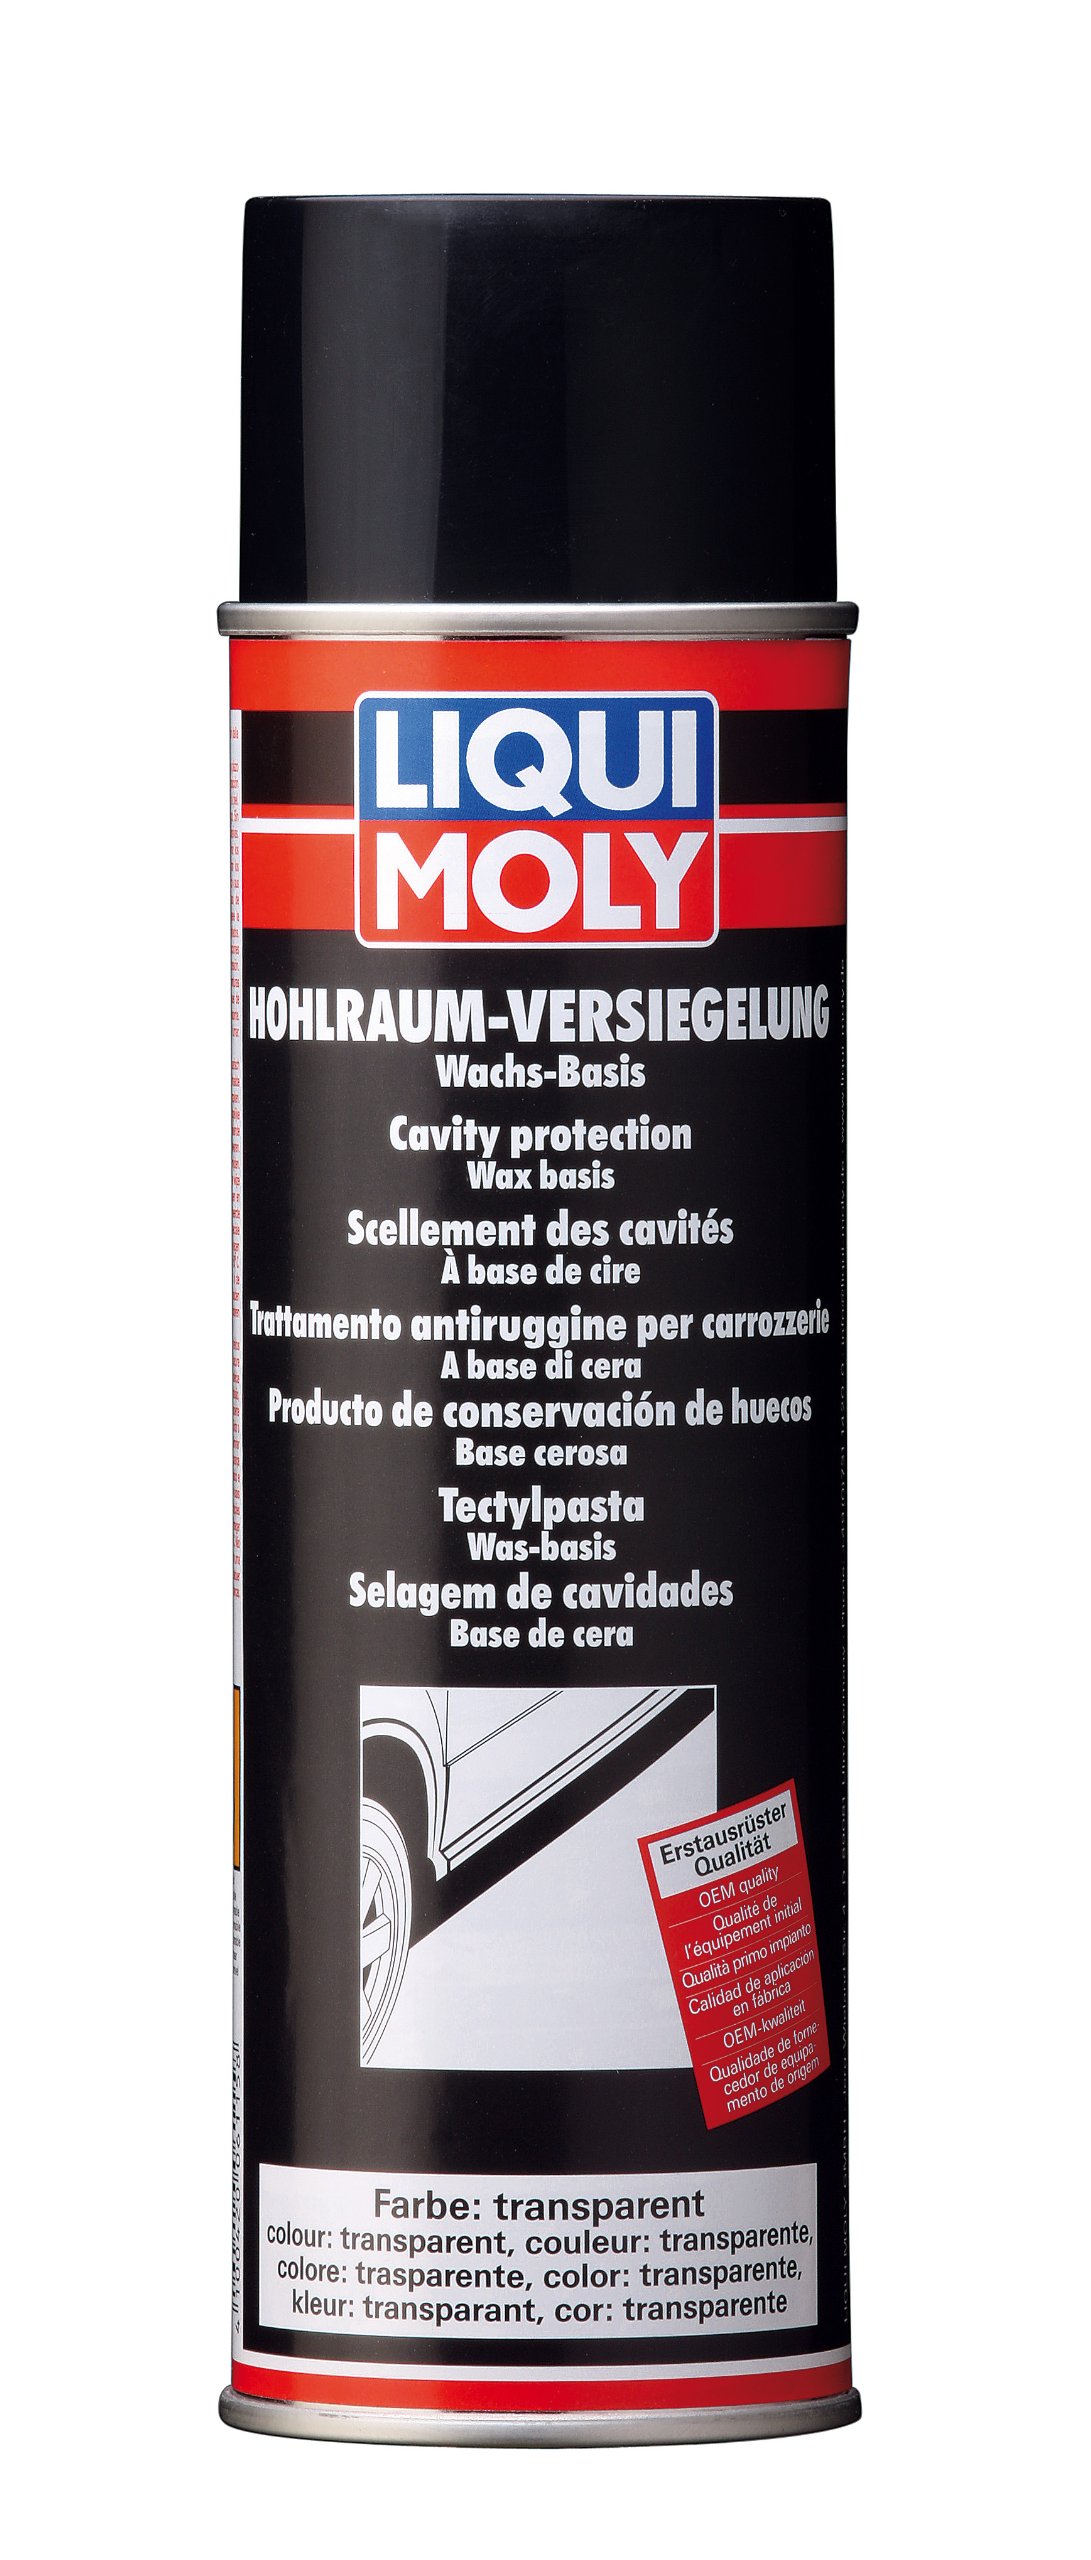 LIQUI MOLY Hohlraumversiegelung transparent | 500 ml | Karosserieschutz | Unterbodenschutz | Hohlraumversiegelung | Art.-Nr.: 6115 von Liqui Moly